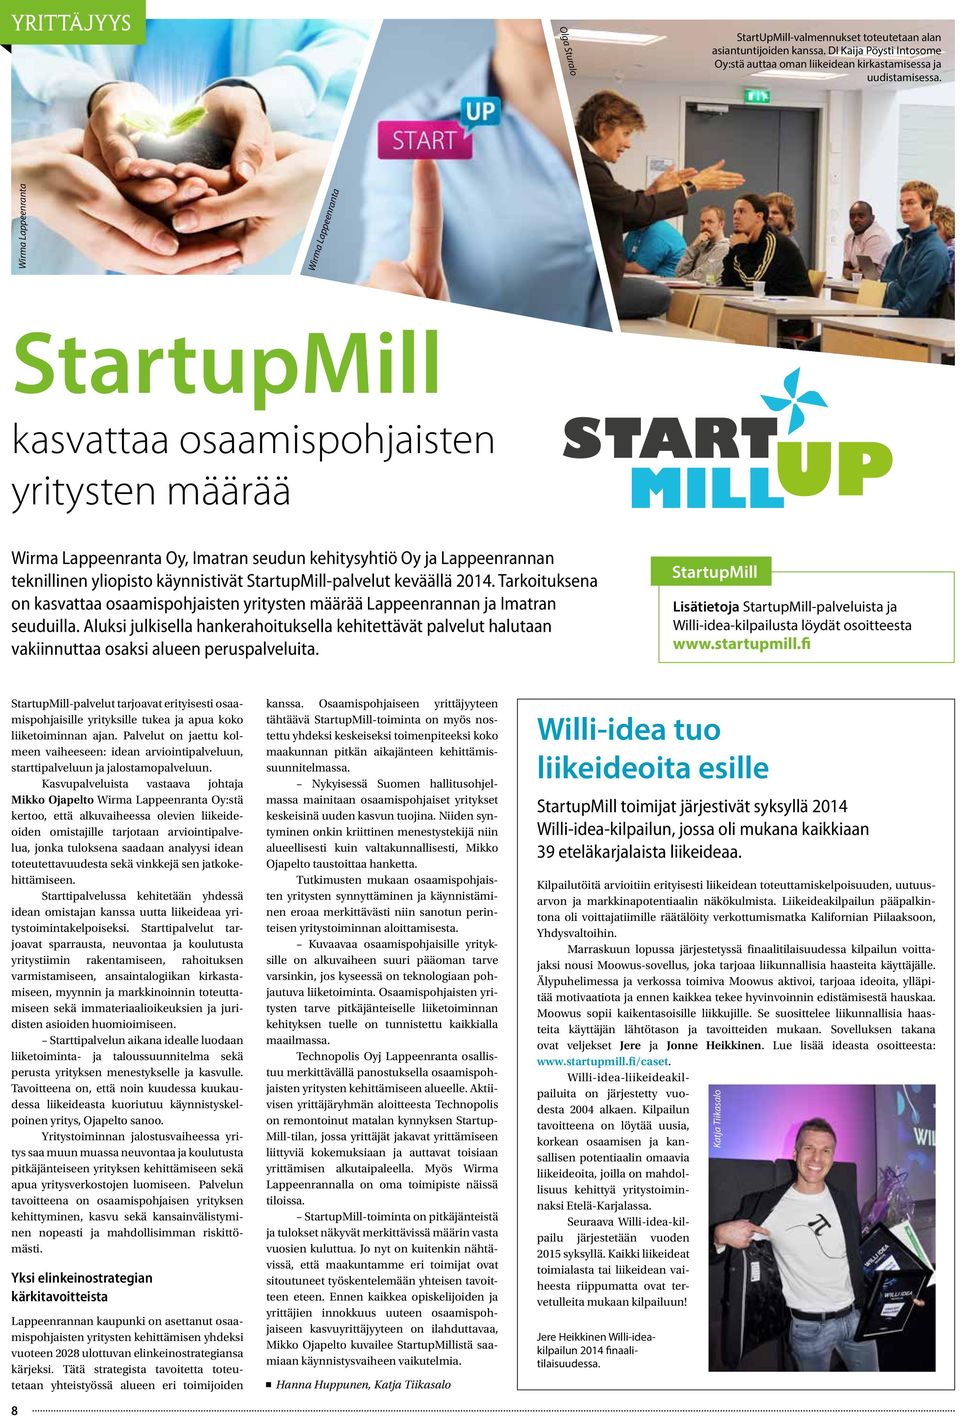 käynnistivät StartupMill-palvelut keväällä 2014. Tarkoituksena on kasvattaa osaamispohjaisten yritysten määrää Lappeenrannan ja Imatran seuduilla.